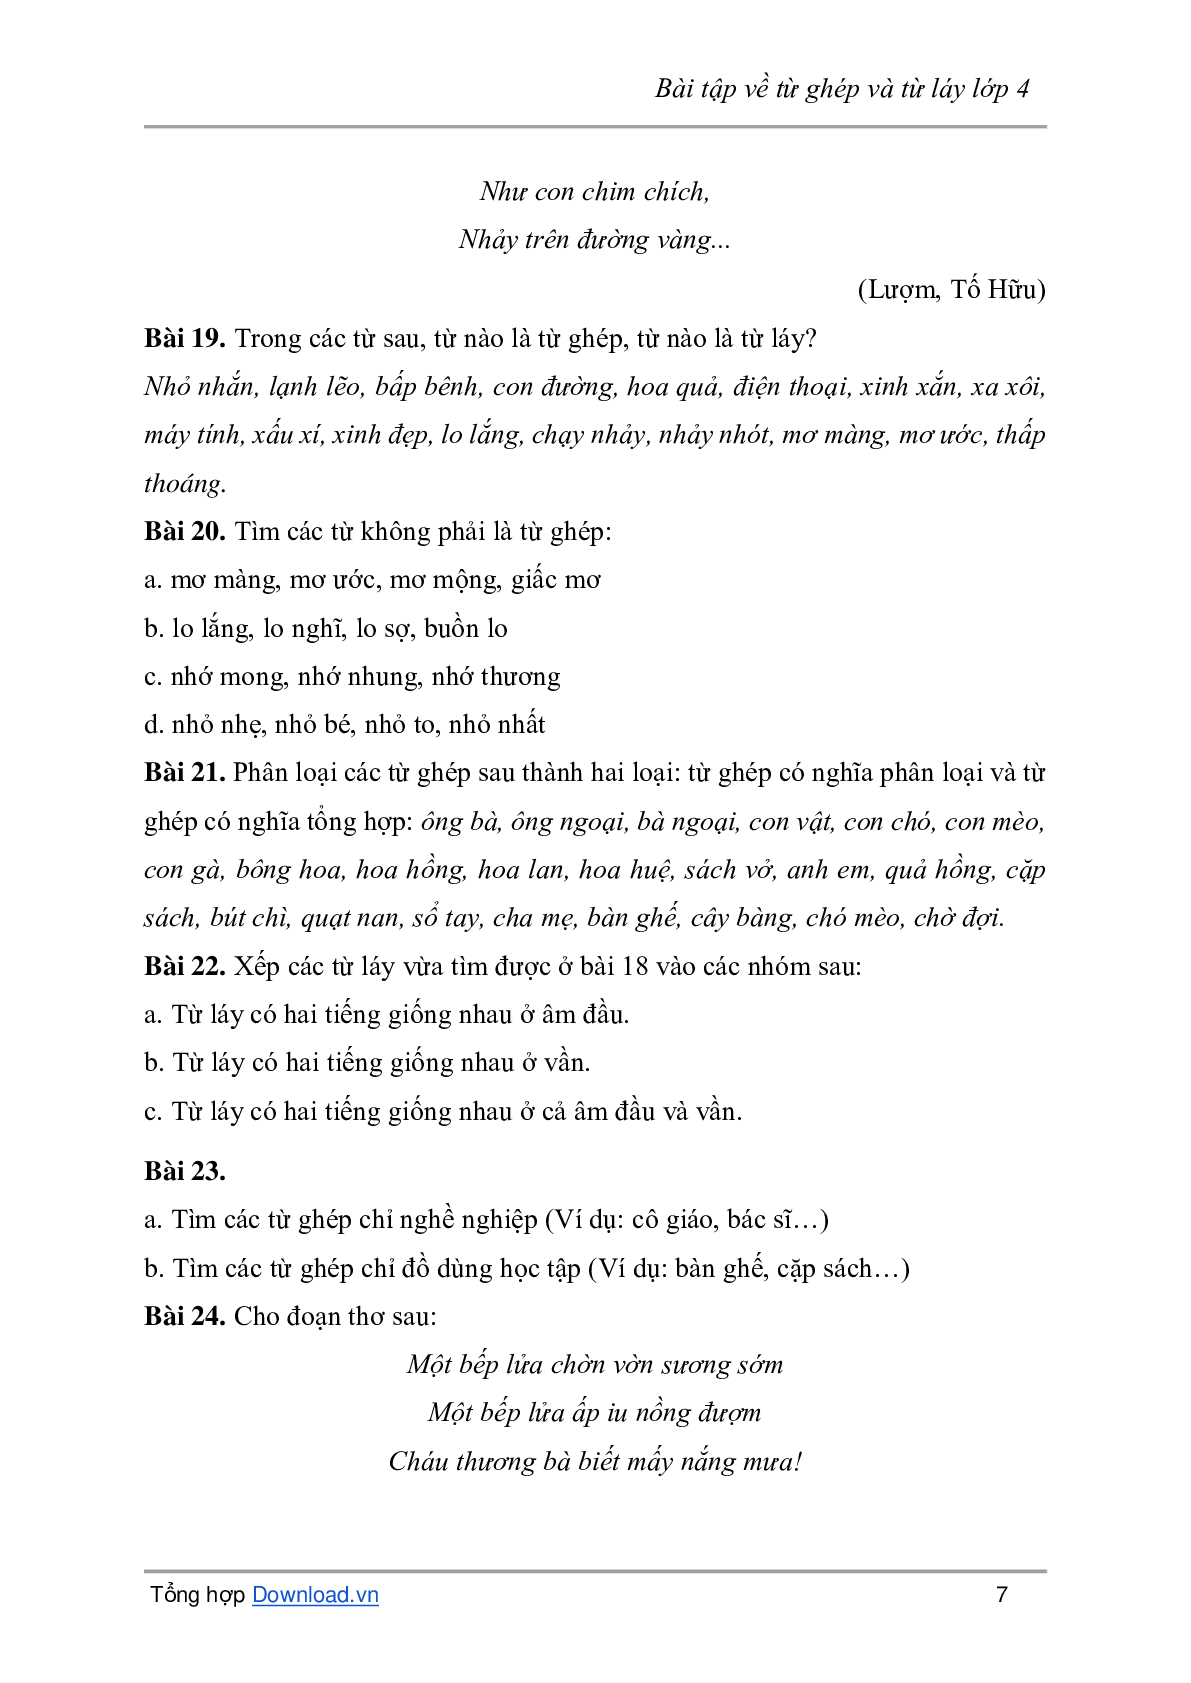 Bài tập về từ ghép và từ láy môn Tiếng Việt lớp 4 có đáp án (trang 7)